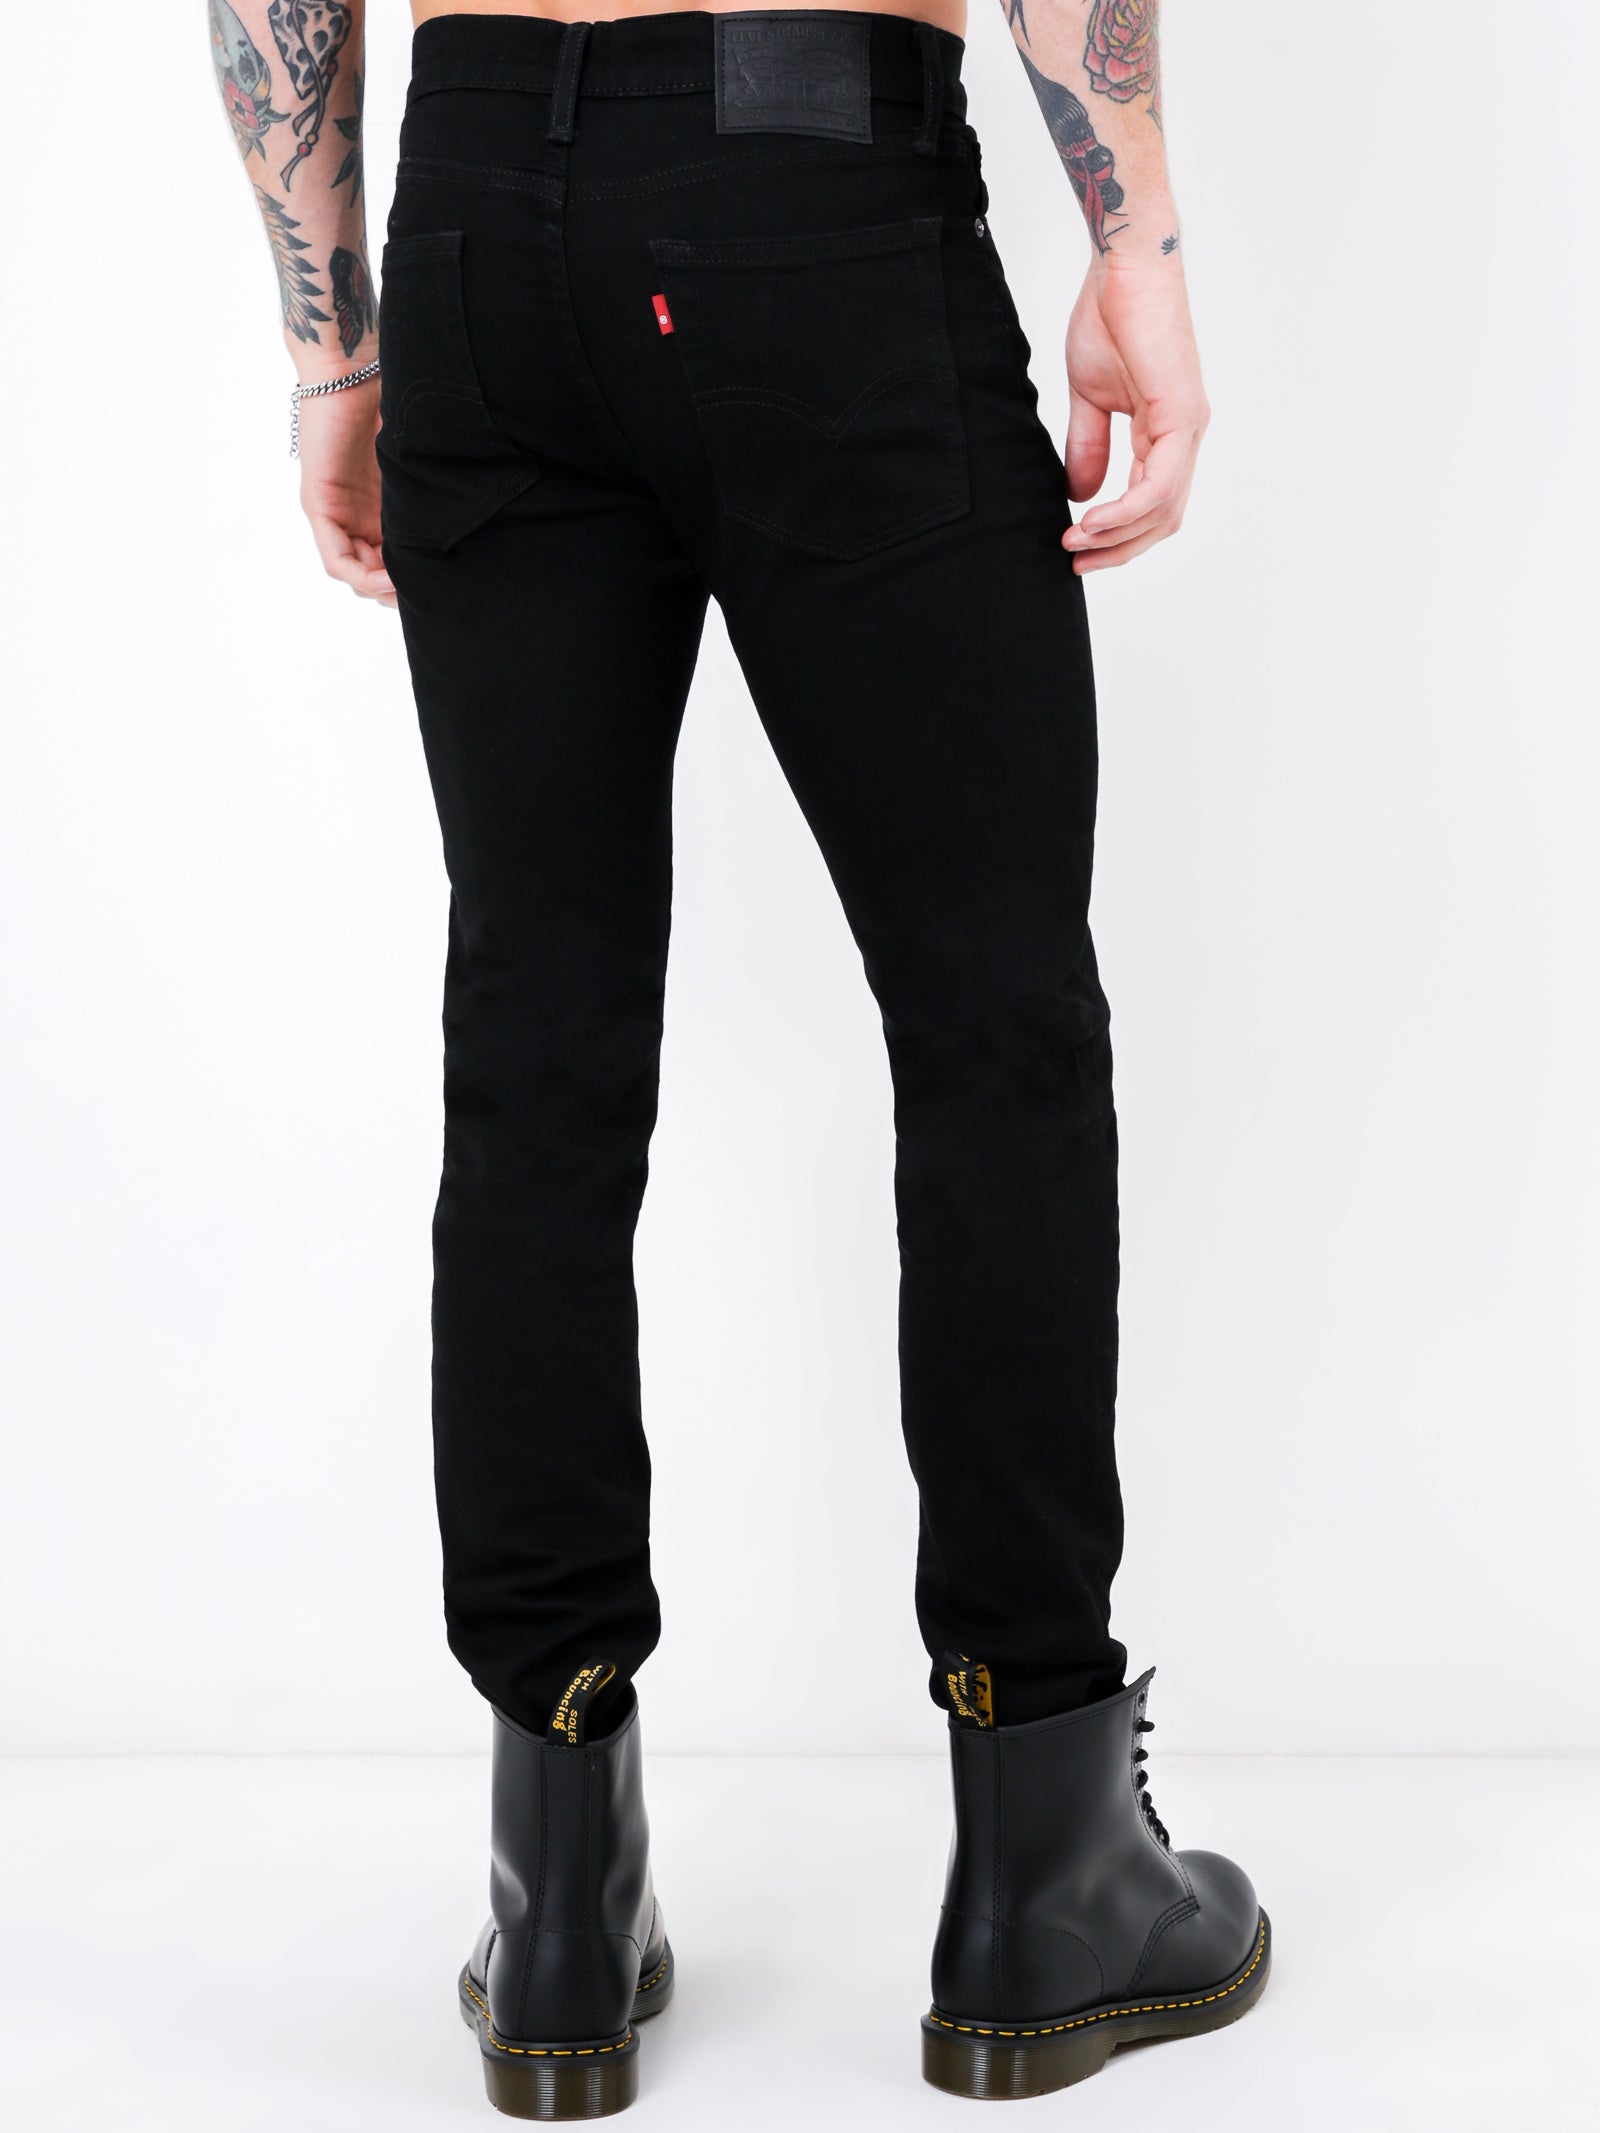 510 Skinny Fit Jeans in Nightshine Black Denim - Glue Store